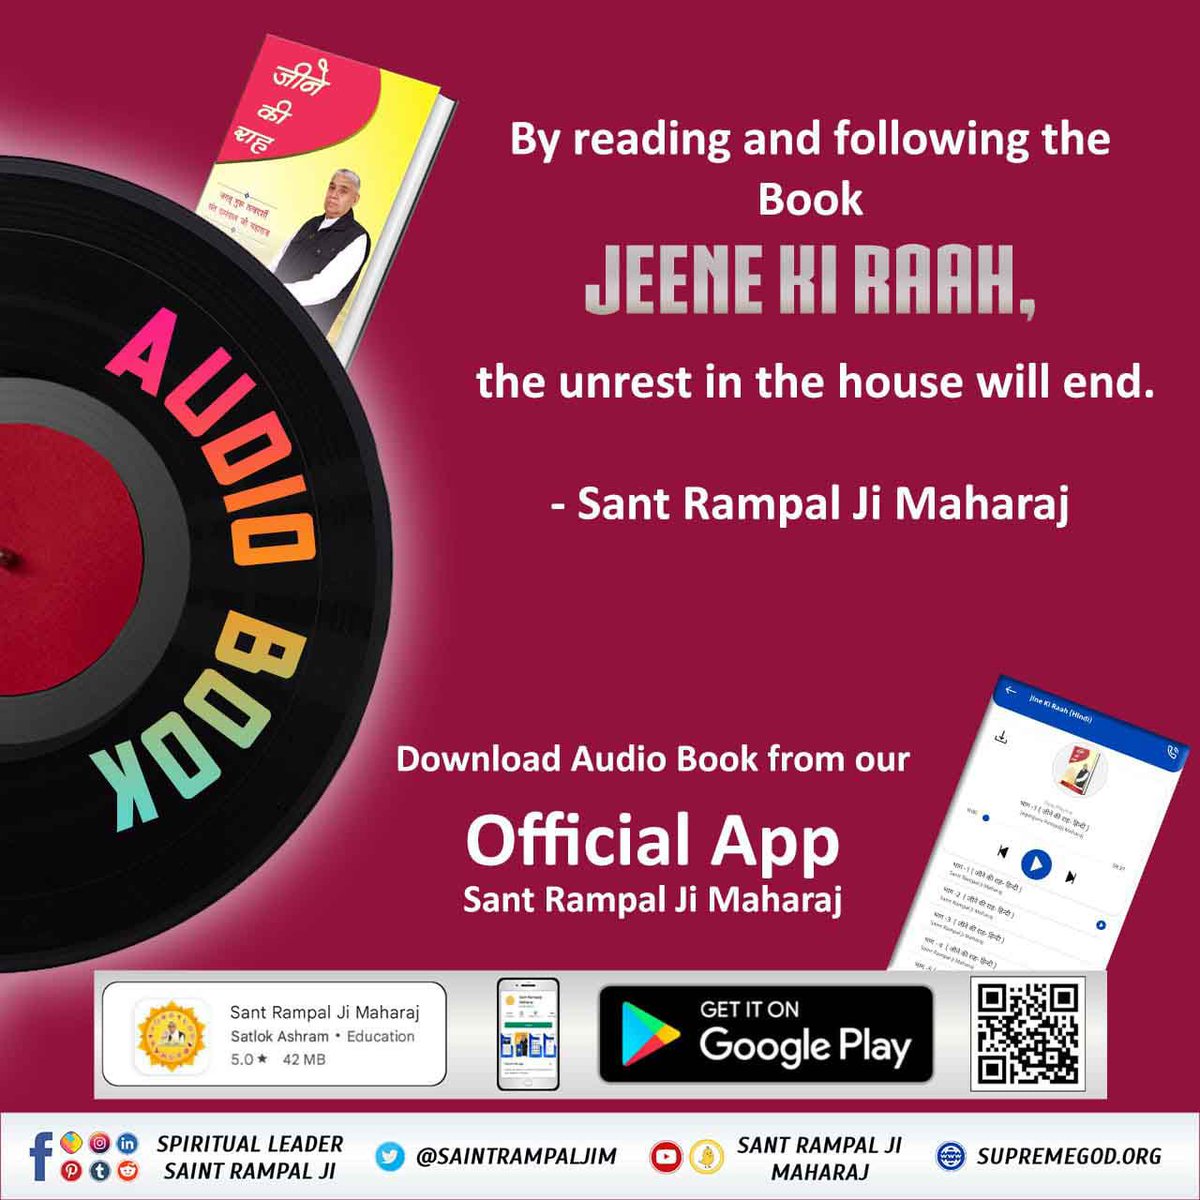 #सत_‌भक्ति_संदेश 

📲 जानने के लिए डाउनलोड करें Official App 'Sant Rampal Ji Maharaj' In Playstore से